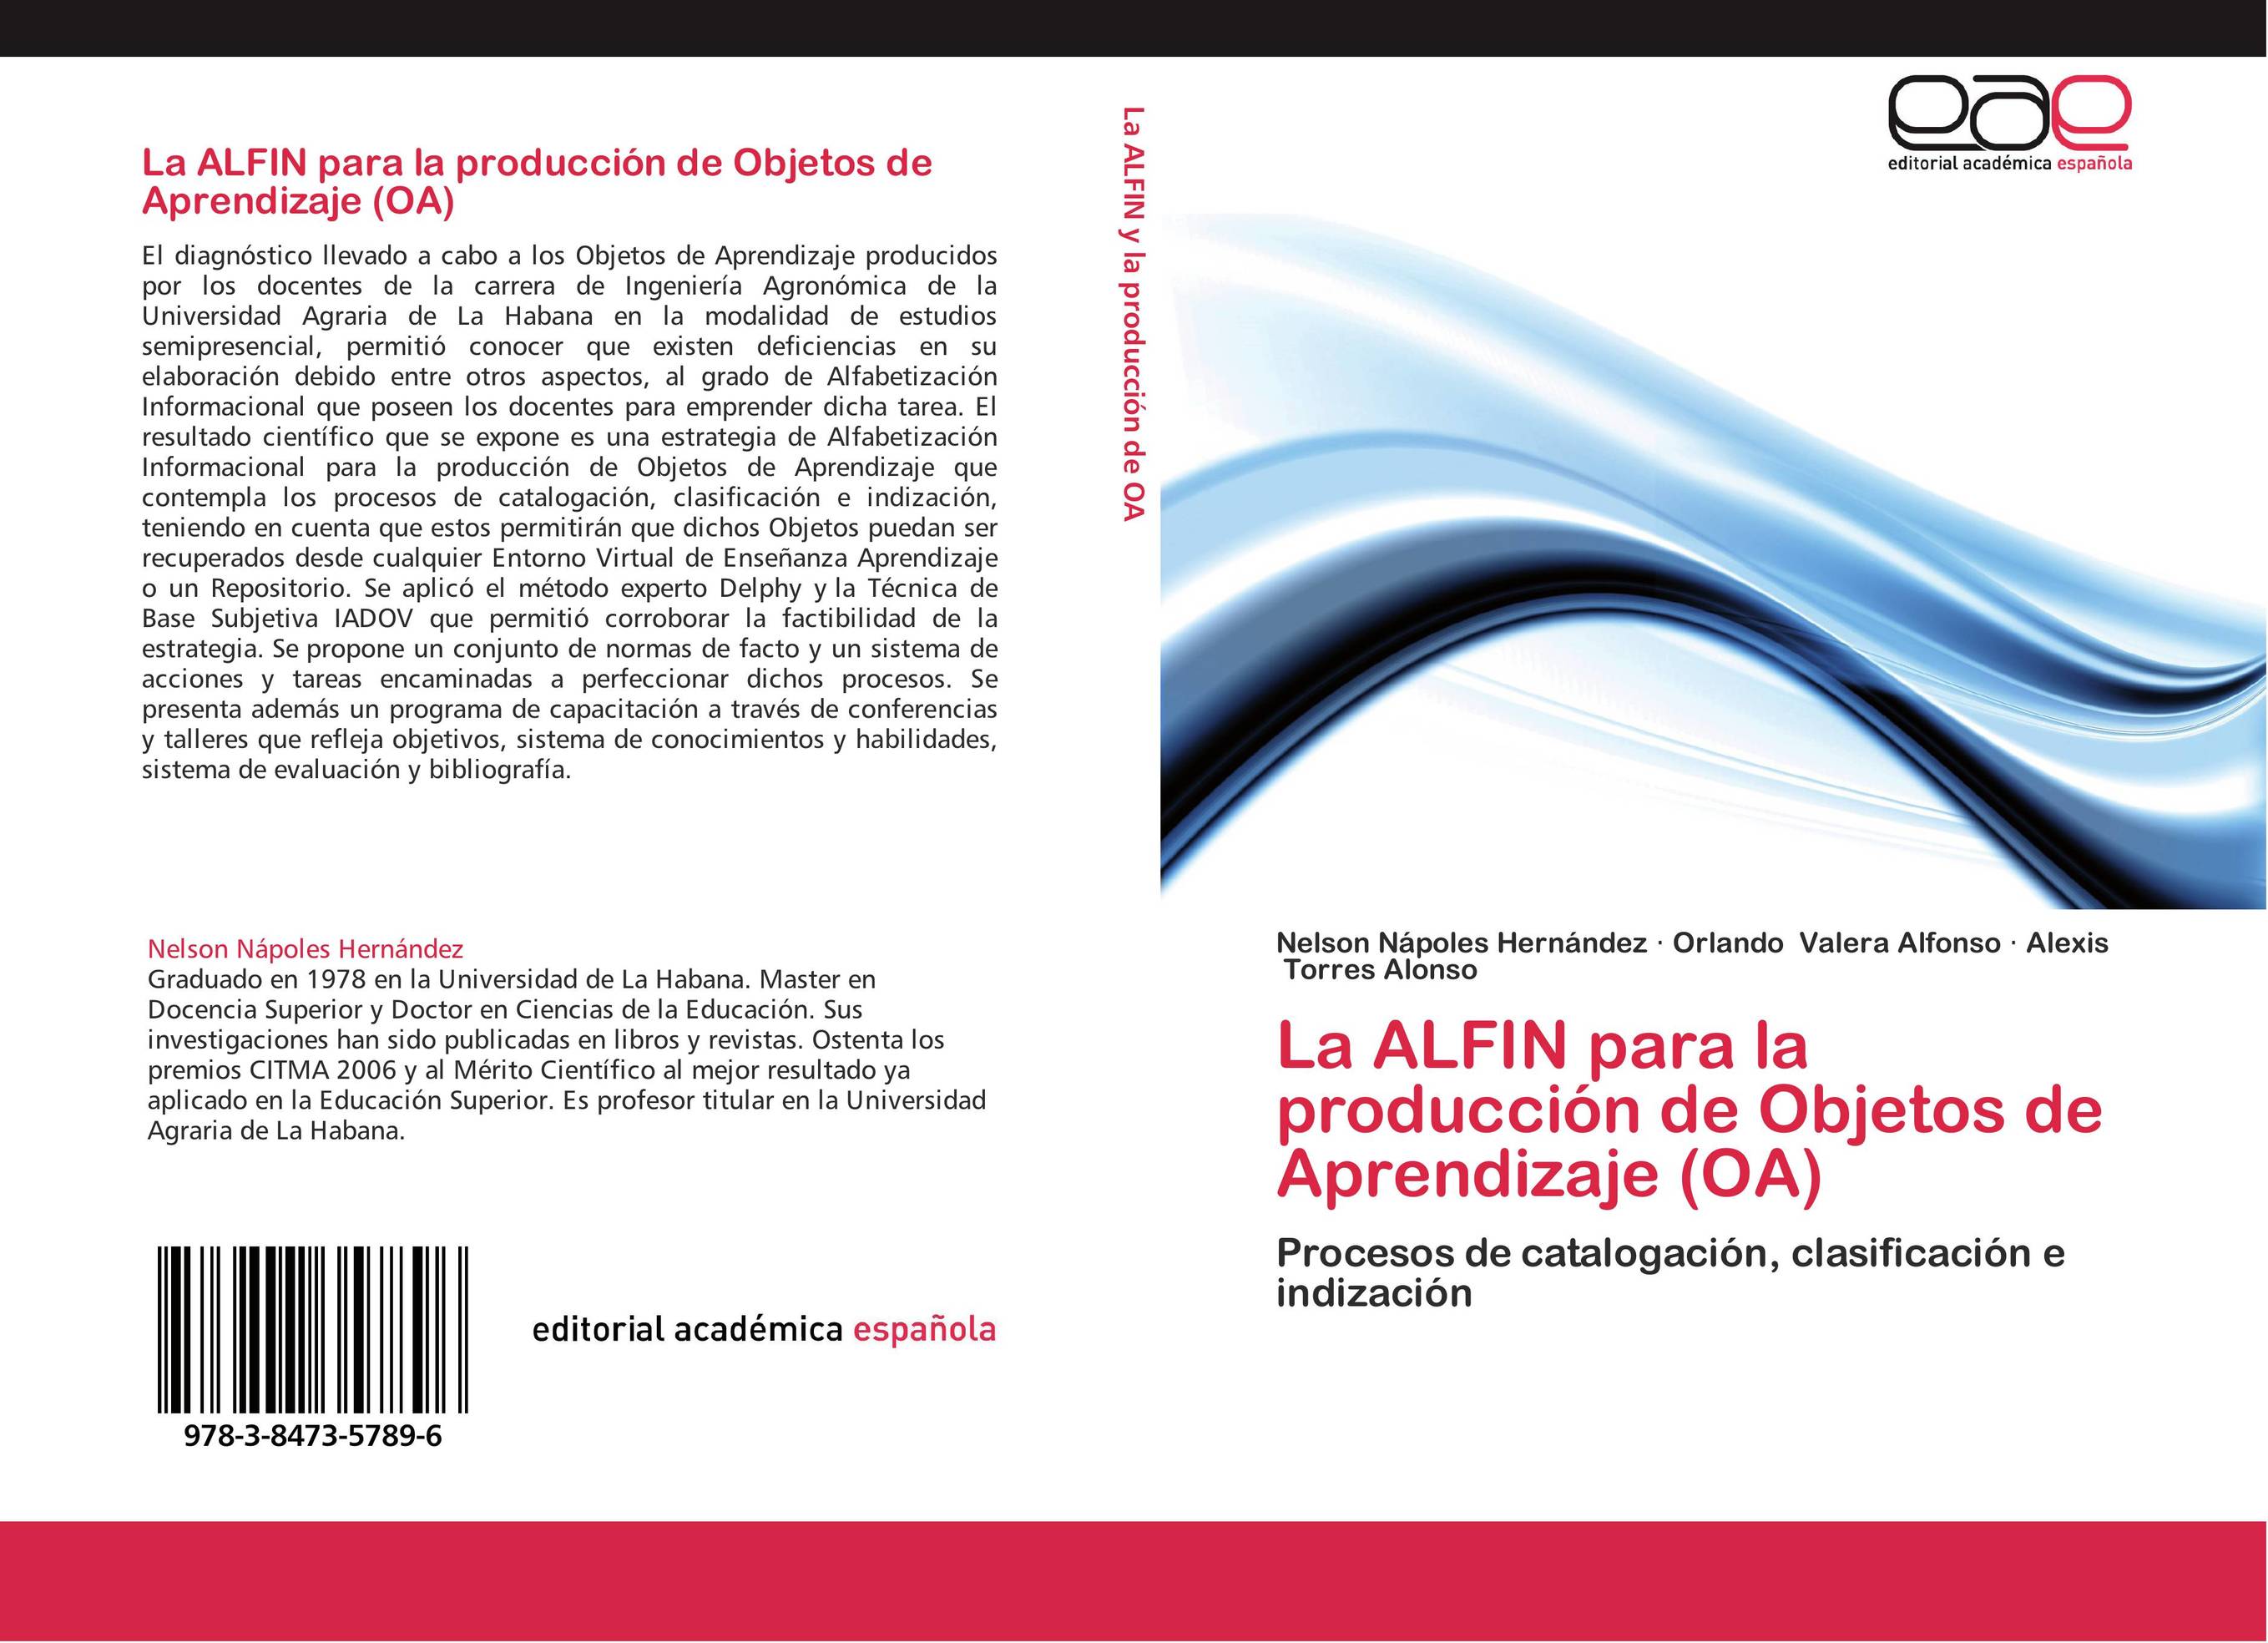 La ALFIN para la producción de  Objetos de Aprendizaje (OA)